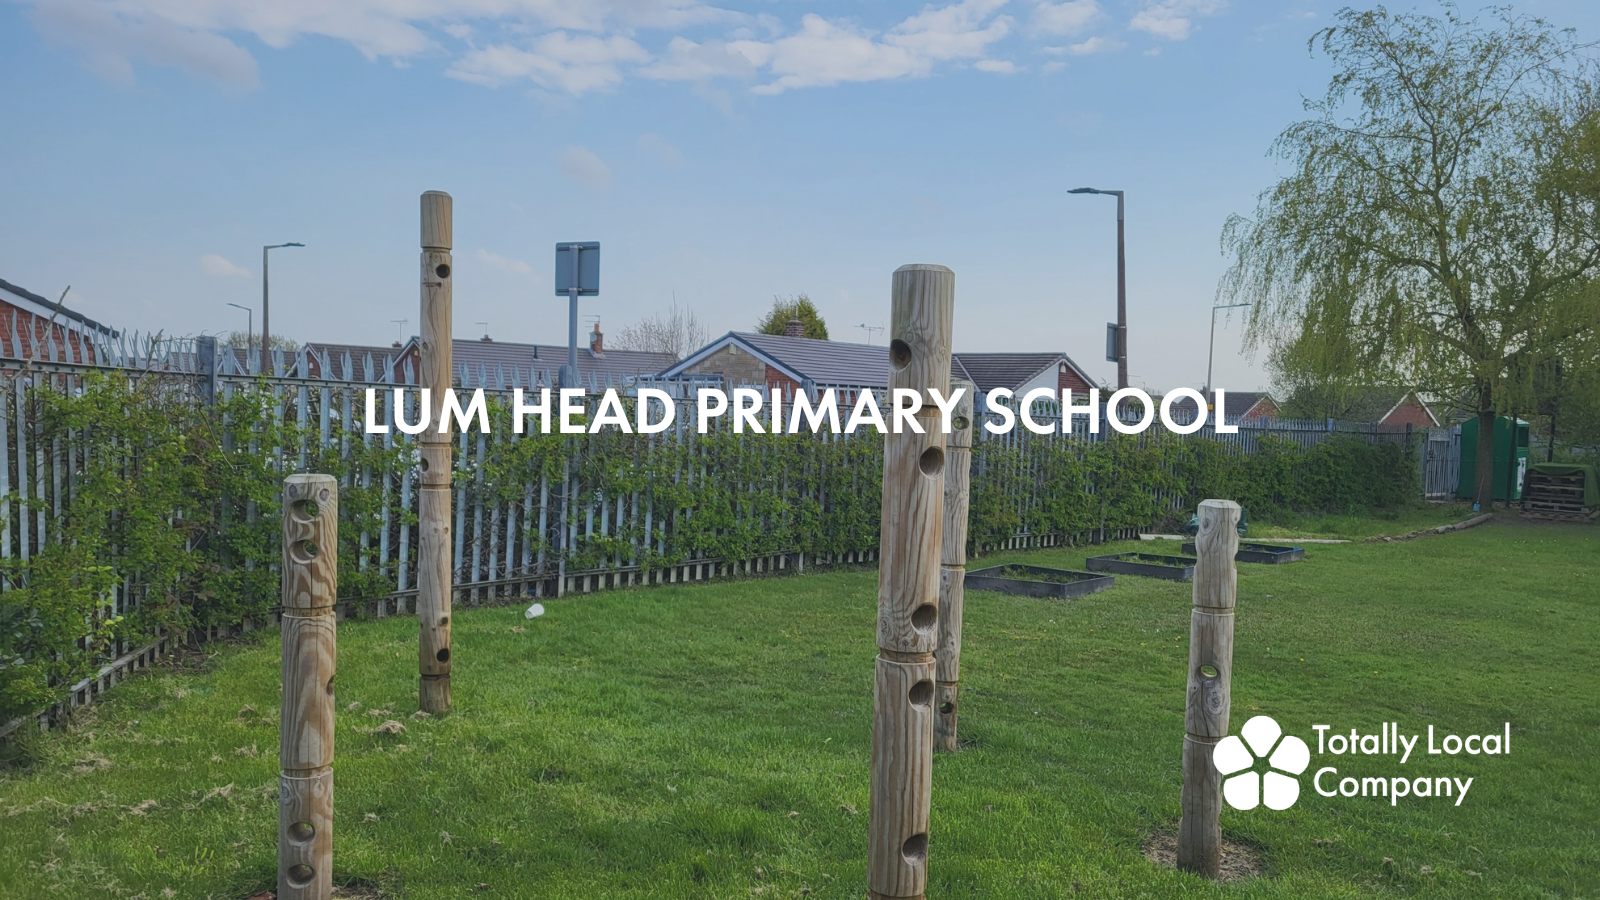 Lum Head Primary School